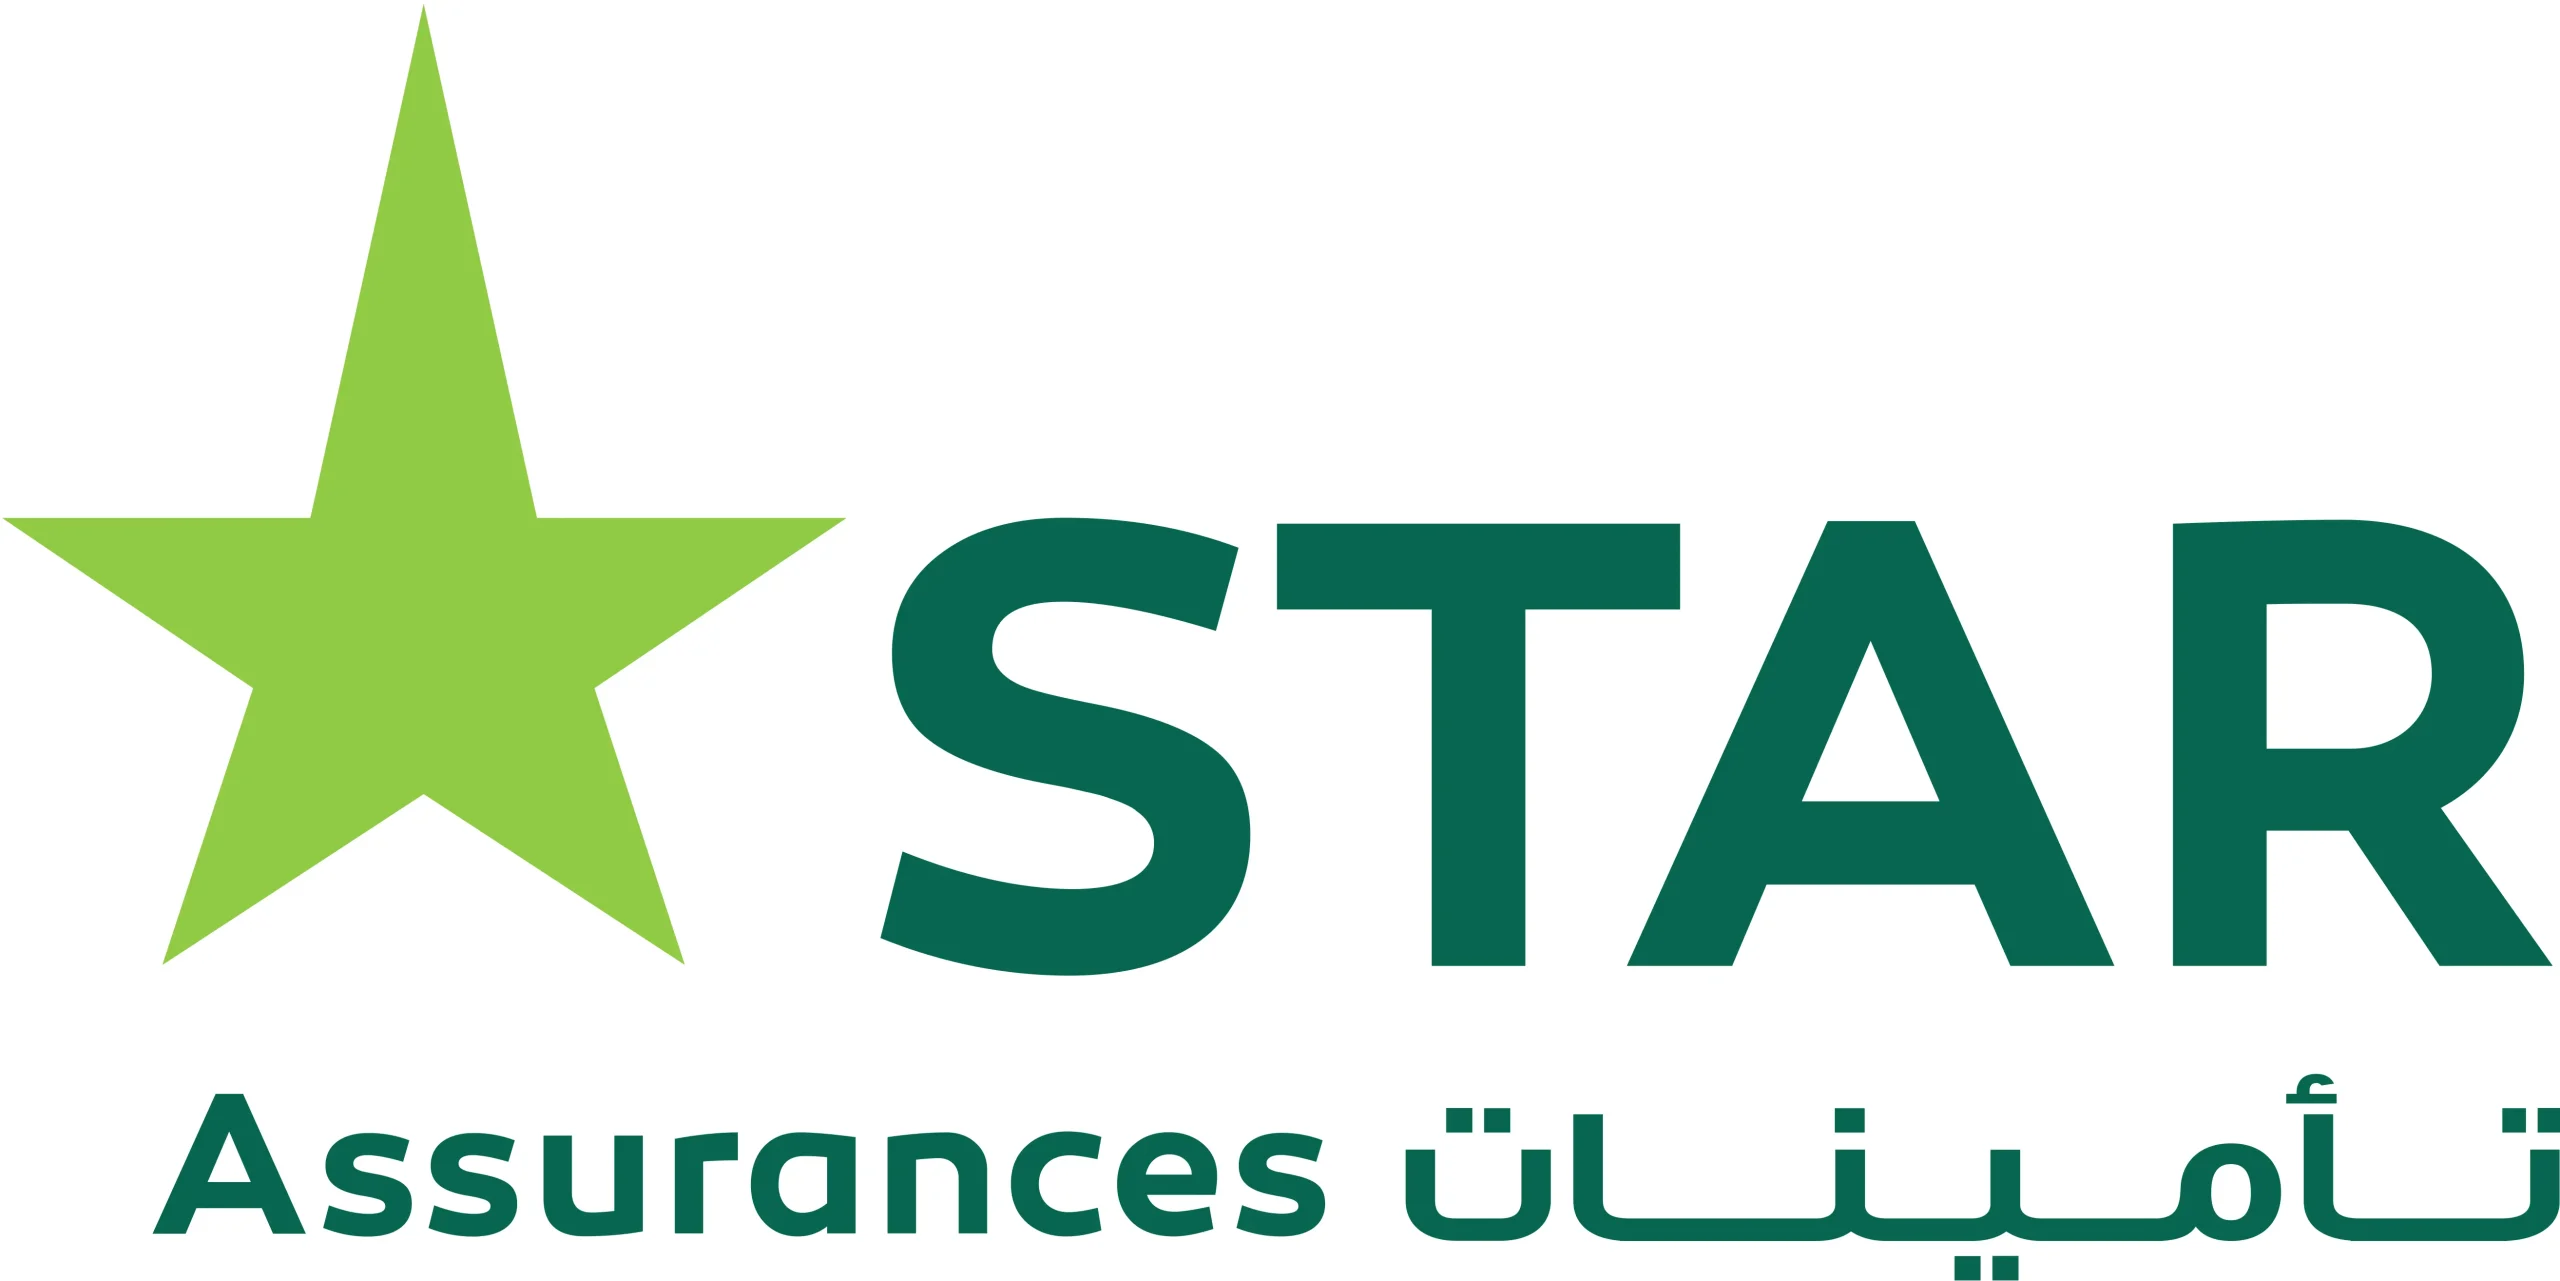 الشركة التونسية للتأمين و إعادة التأمين ستار